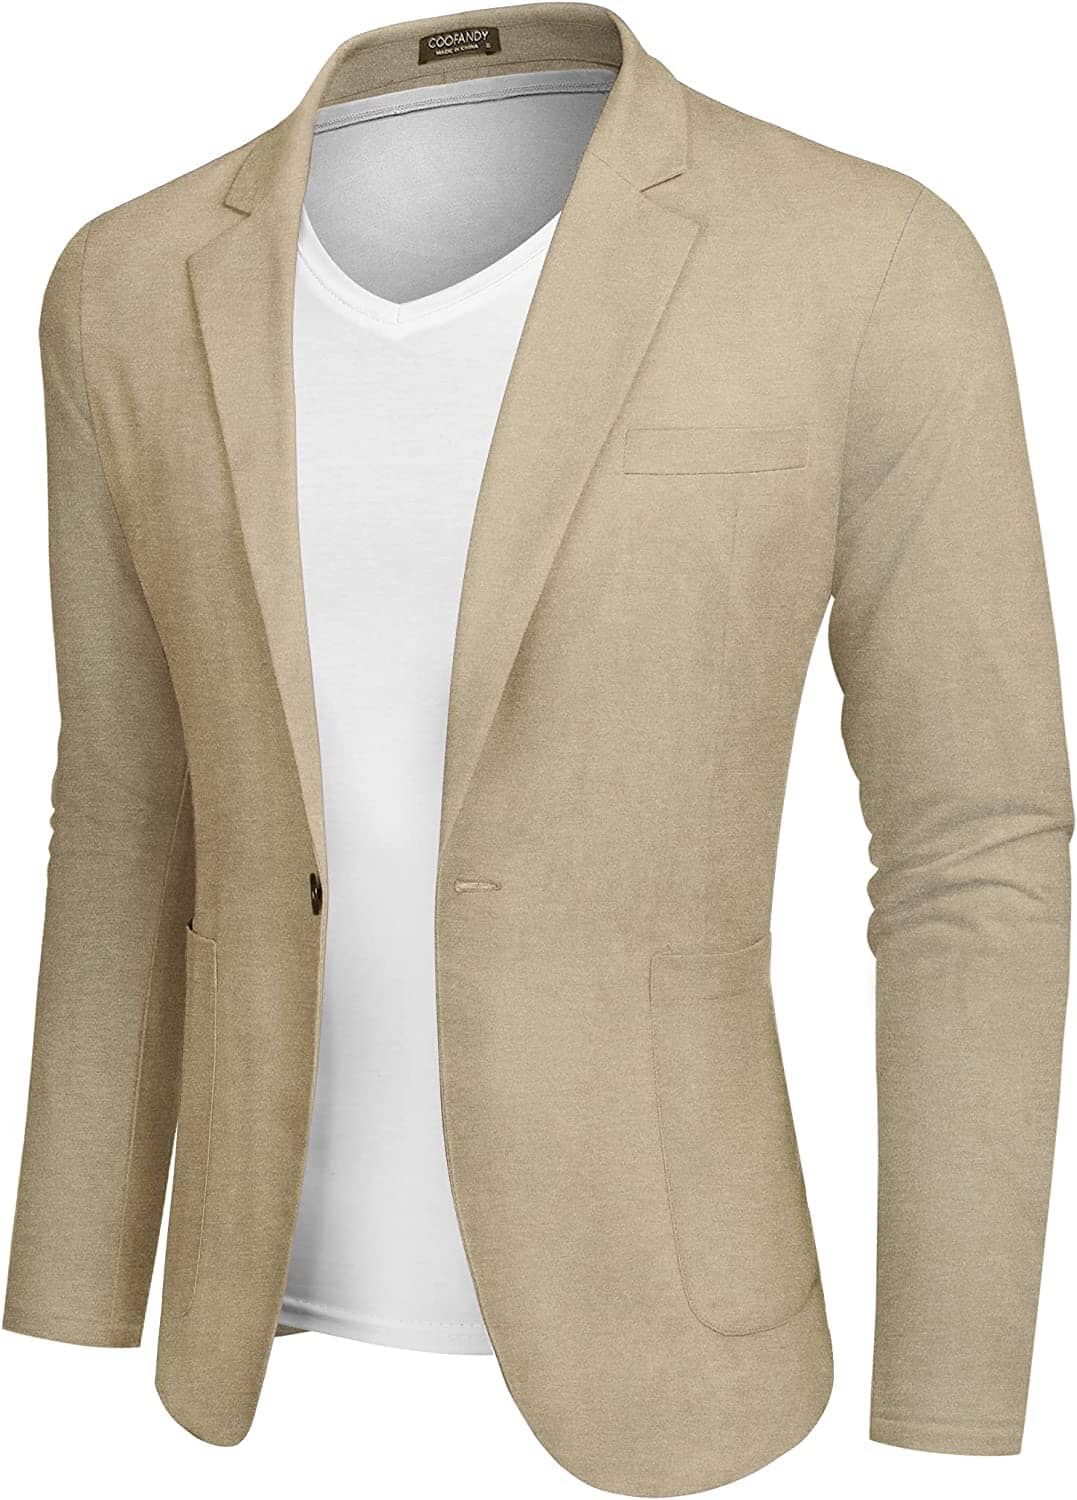 Casual Regular Fit Lightweight Linen Blazer (US Only) Blazer COOFANDY Store Khaki XS 